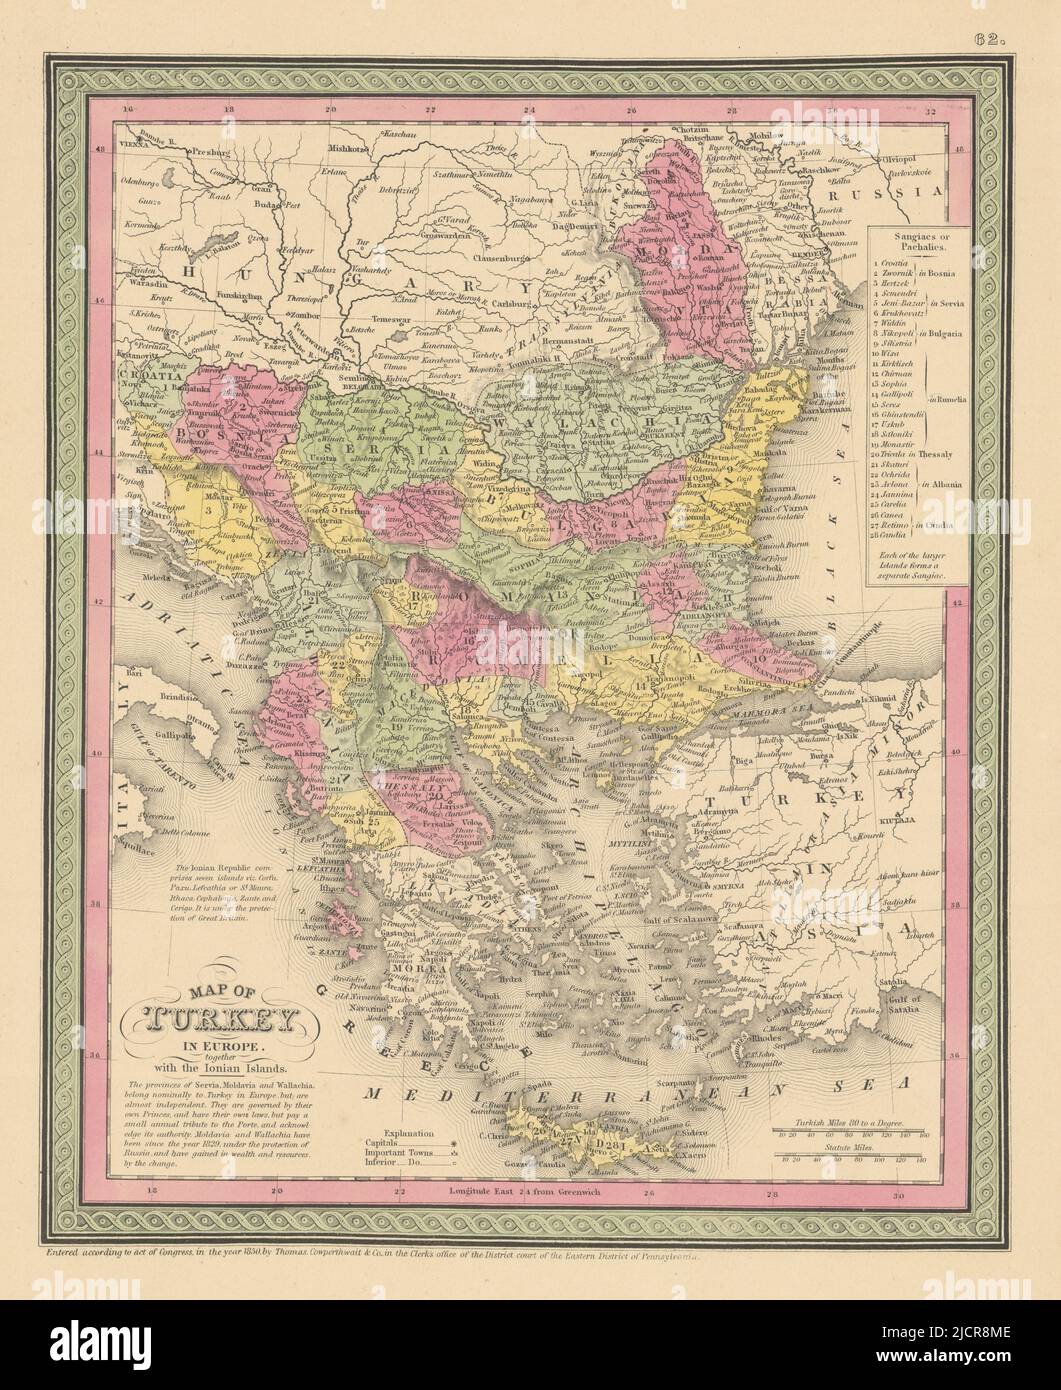 Die Türkei in Europa zusammen mit den Ionischen Inseln. Balkan COWPERTHWAIT 1852-Karte Stockfoto